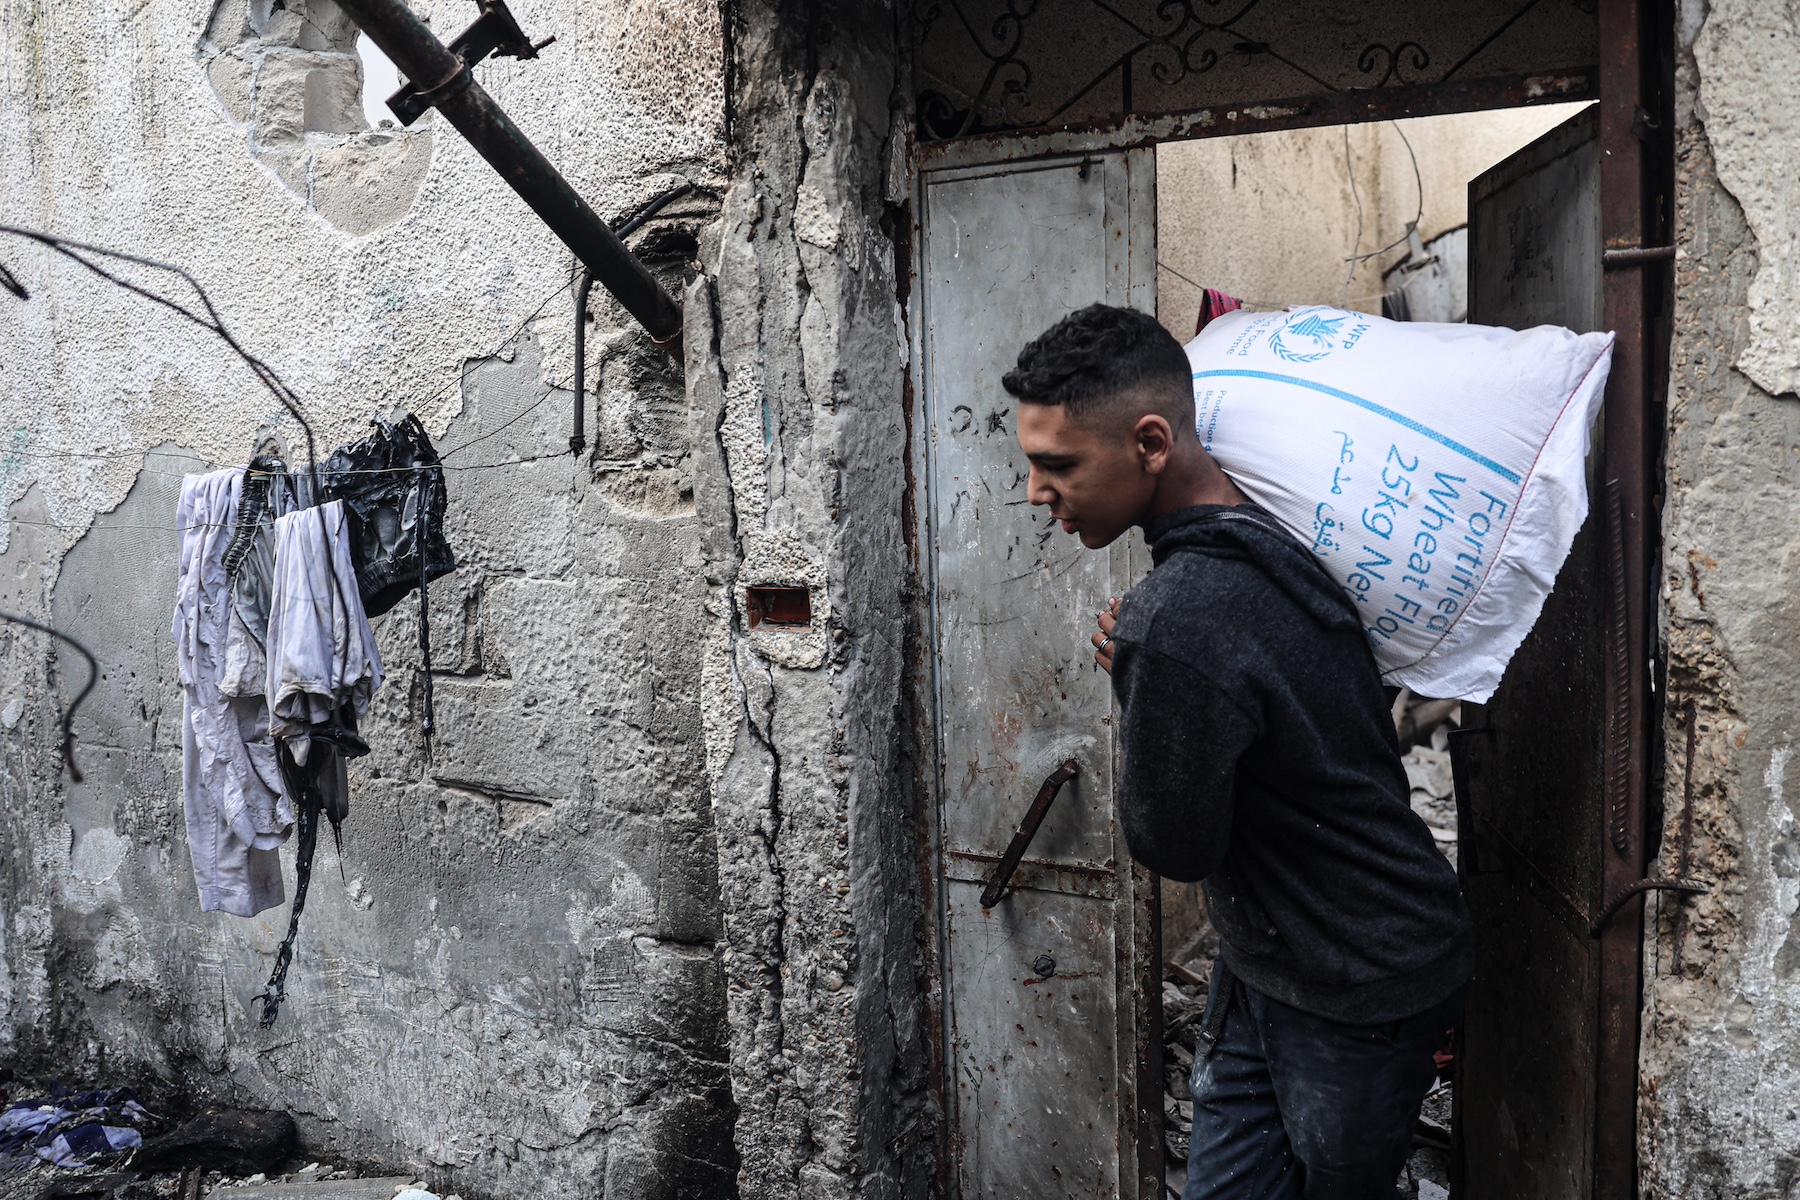 gaza israel war salvages bag flour damaged house